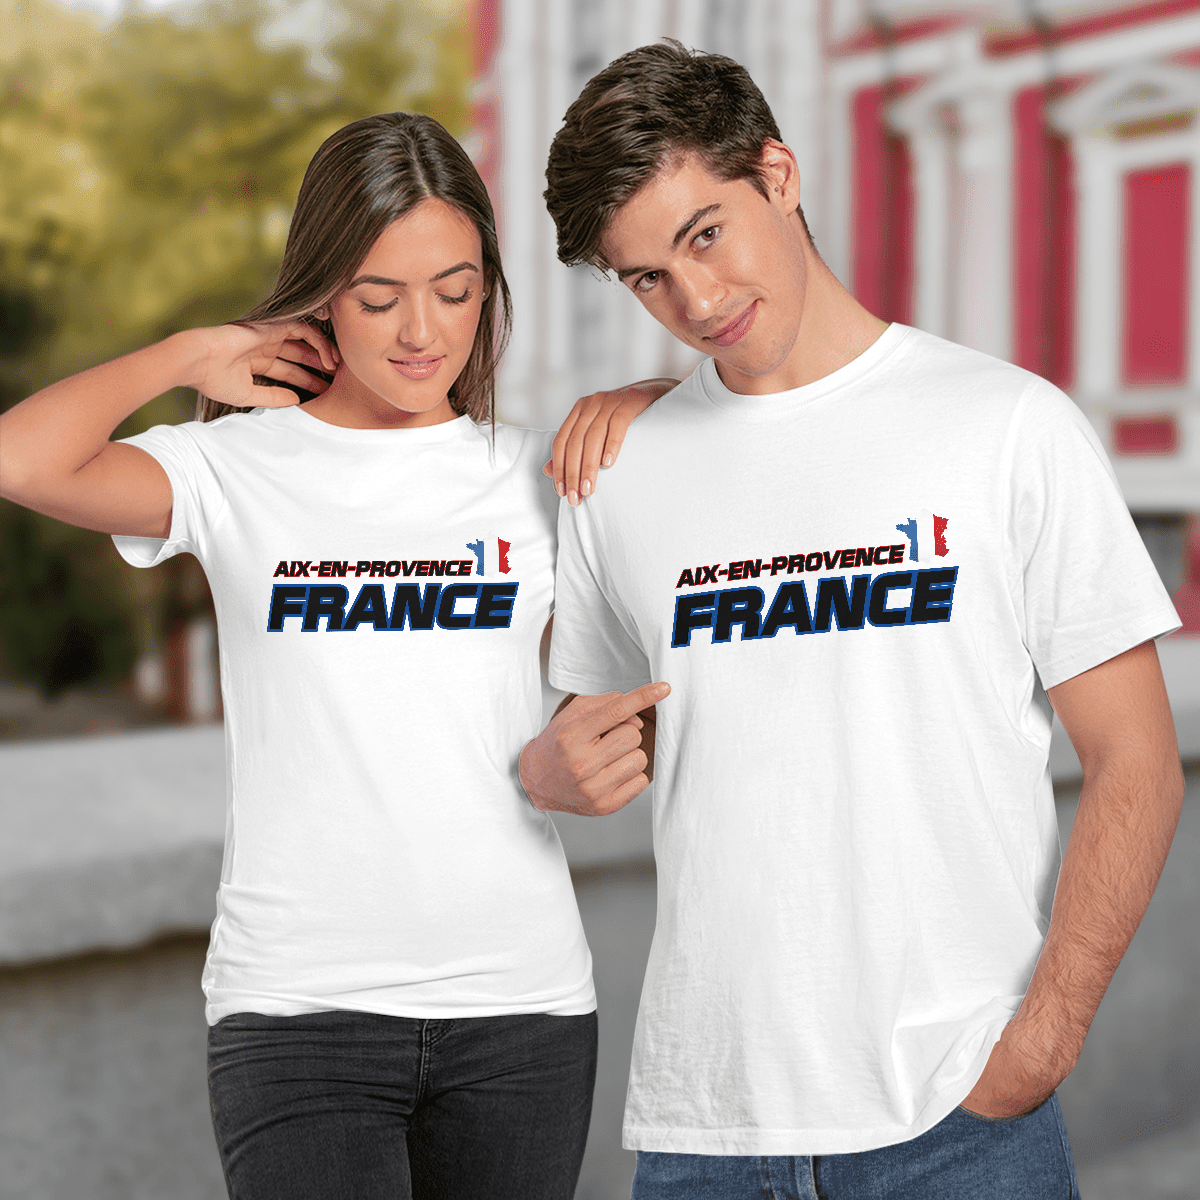 AX-EN-PROVENCE France Shirt